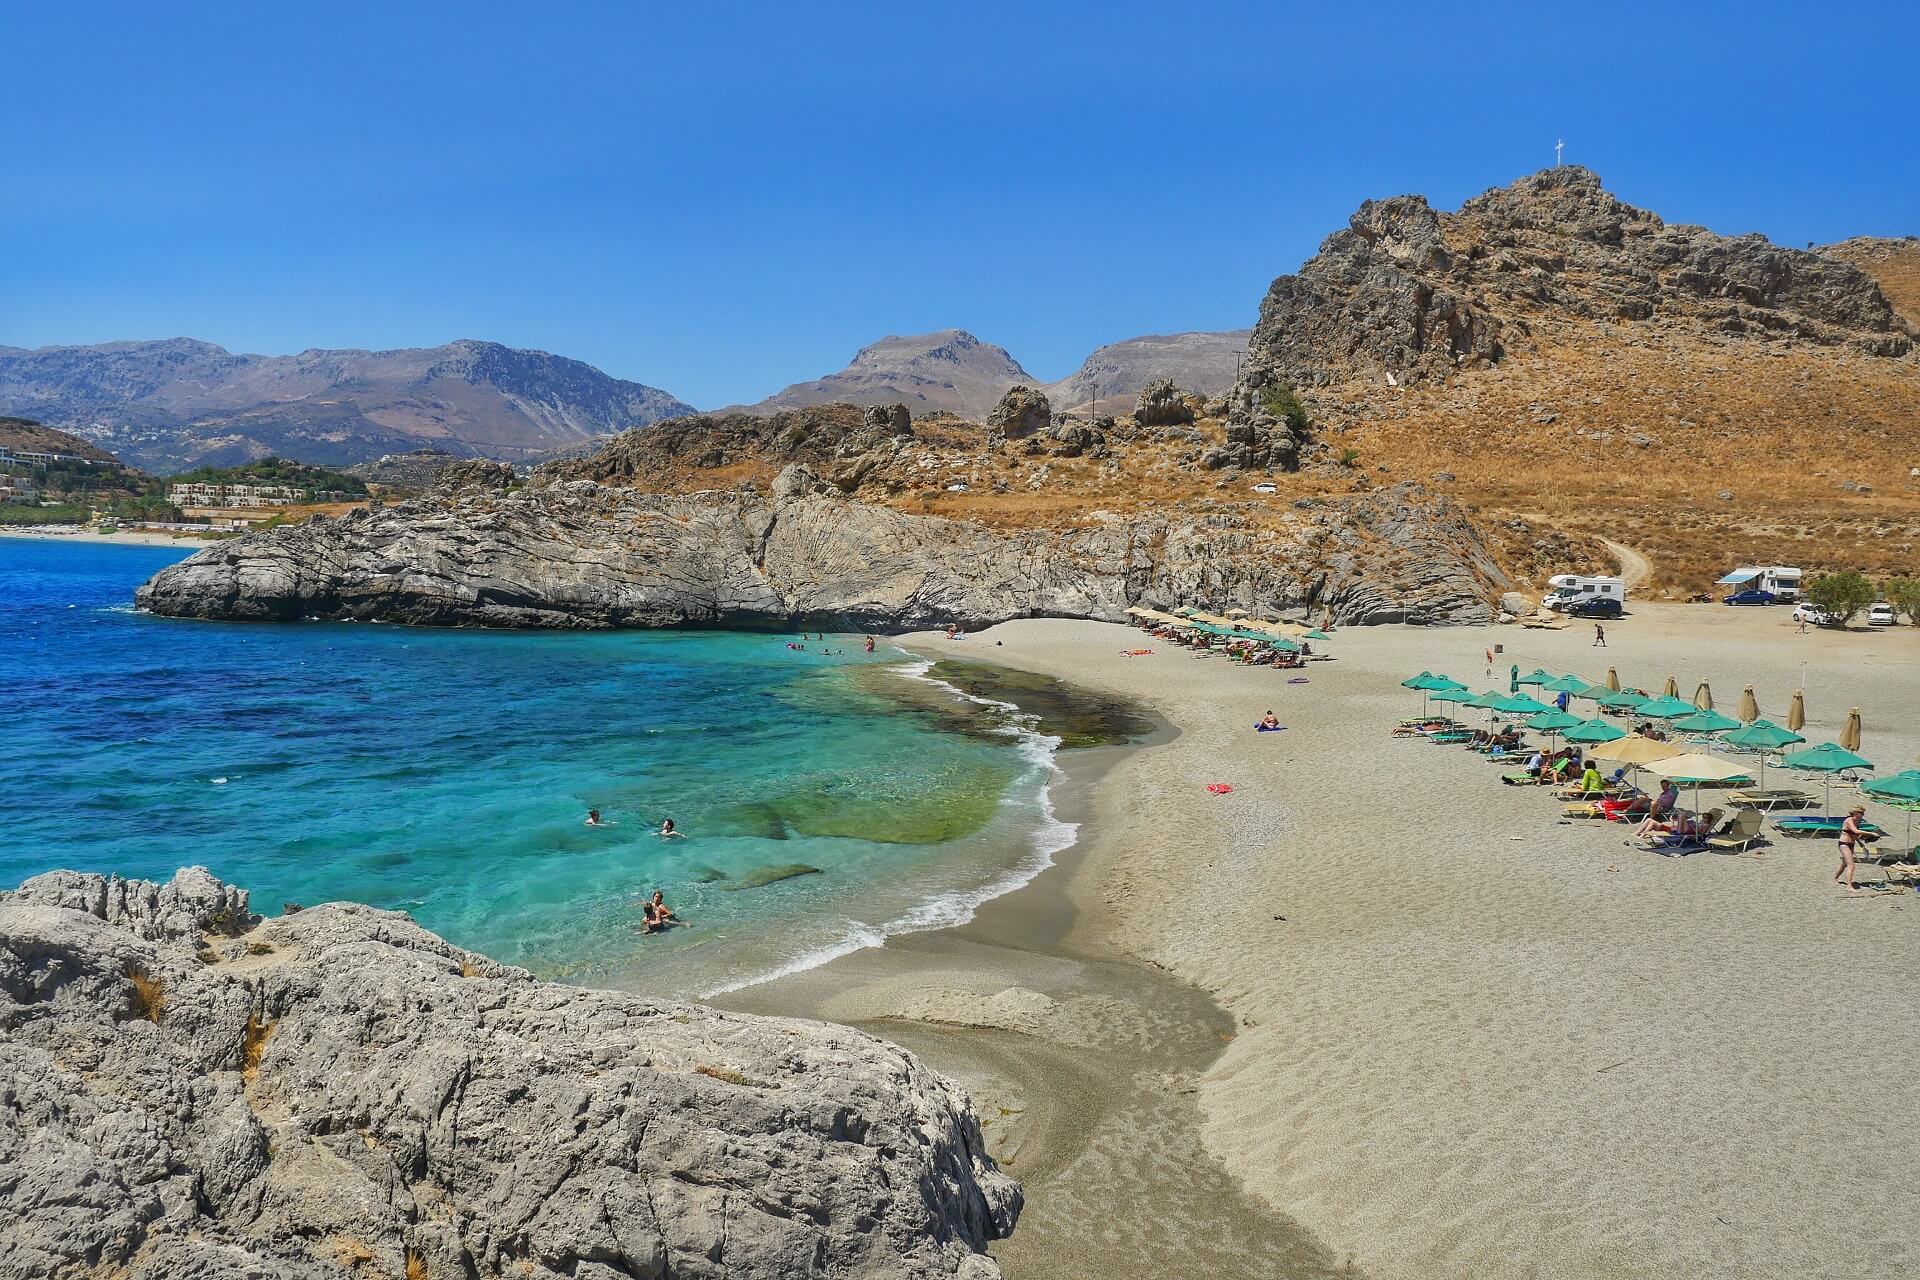  Критийн Ретимно дахь хамгийн сайн наран шарлагын газрууд